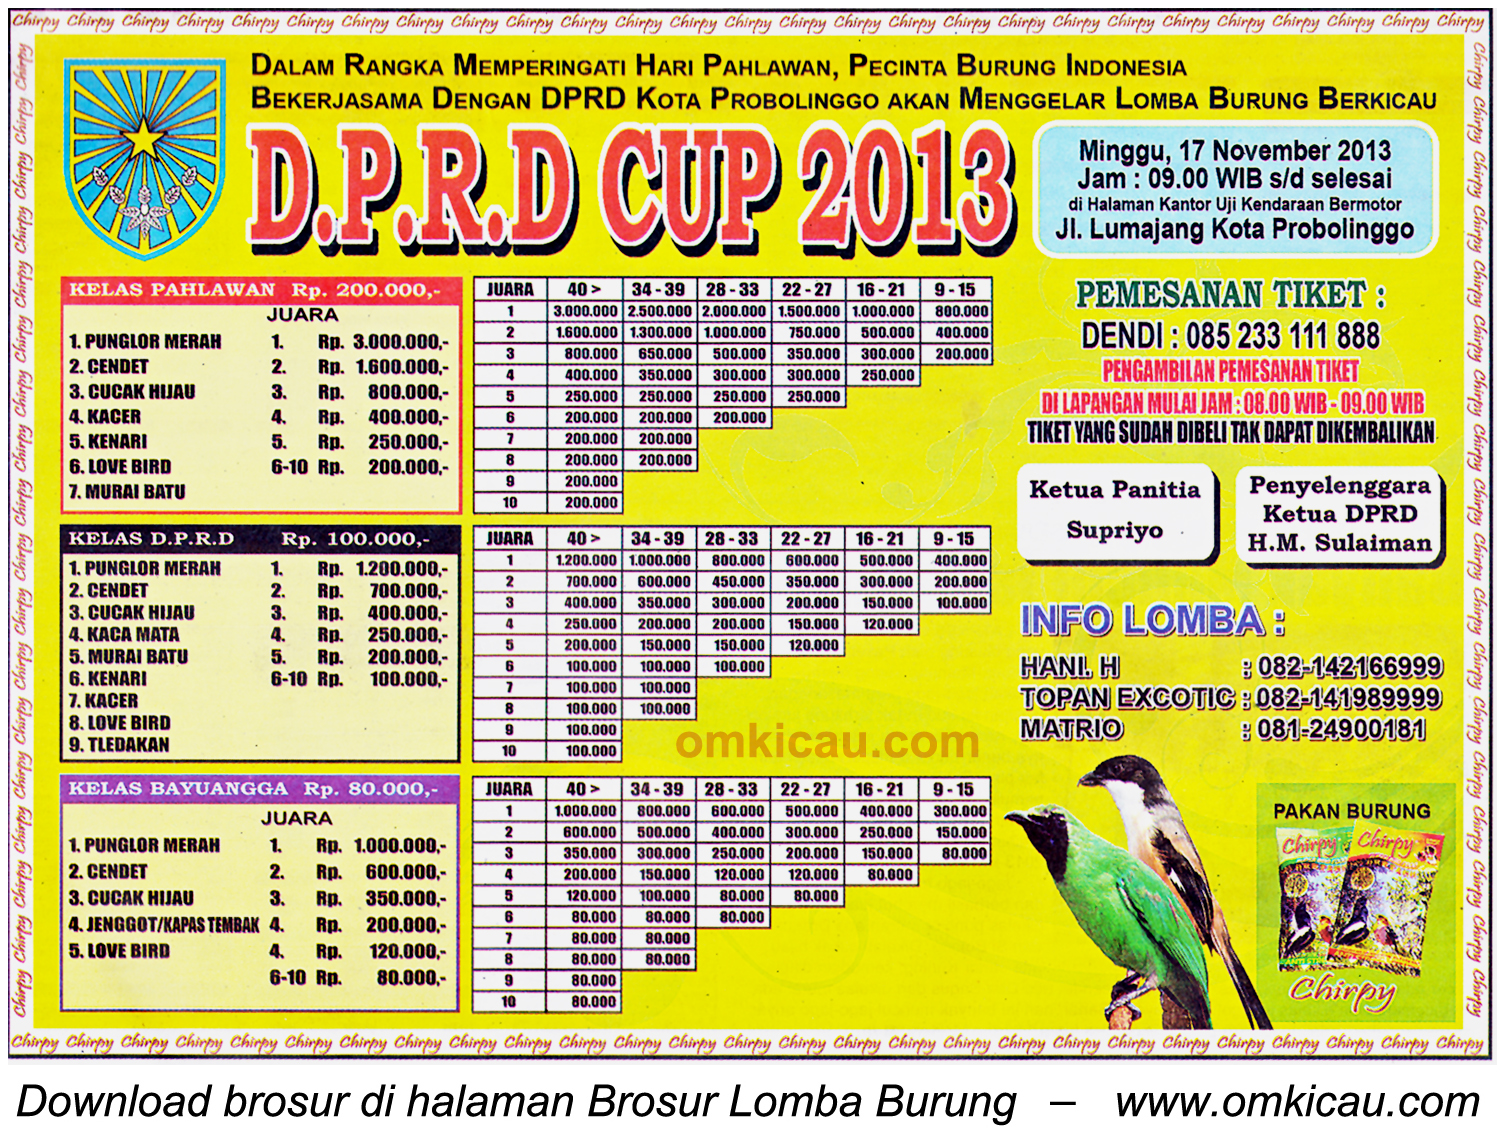 Brosur Lomba Burung Berkicau DPRD Cup, Kota Probolinggo, 17 November 2013